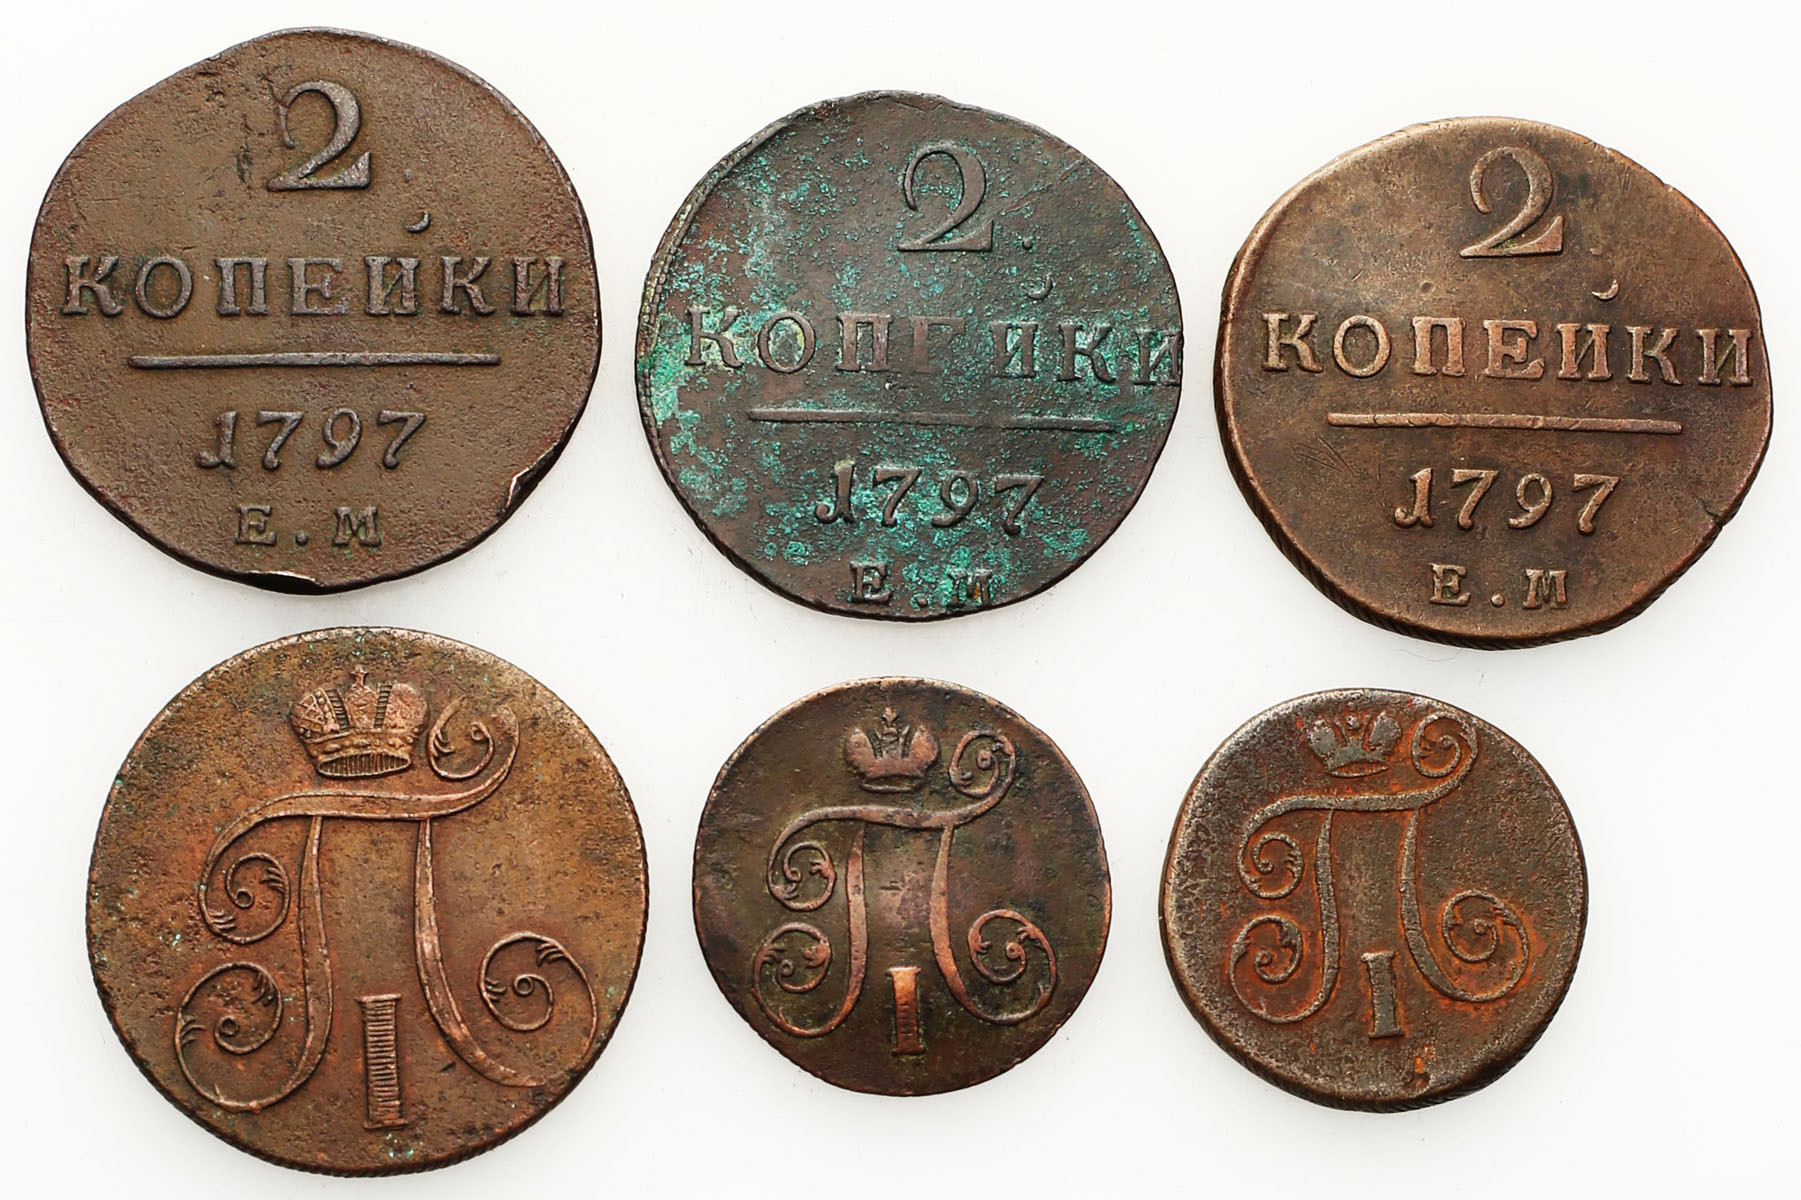 Rosja, Paweł I. 1, 2 kopiejki 1797-1800 EM, Jekaterinburg, zestaw 6 monet